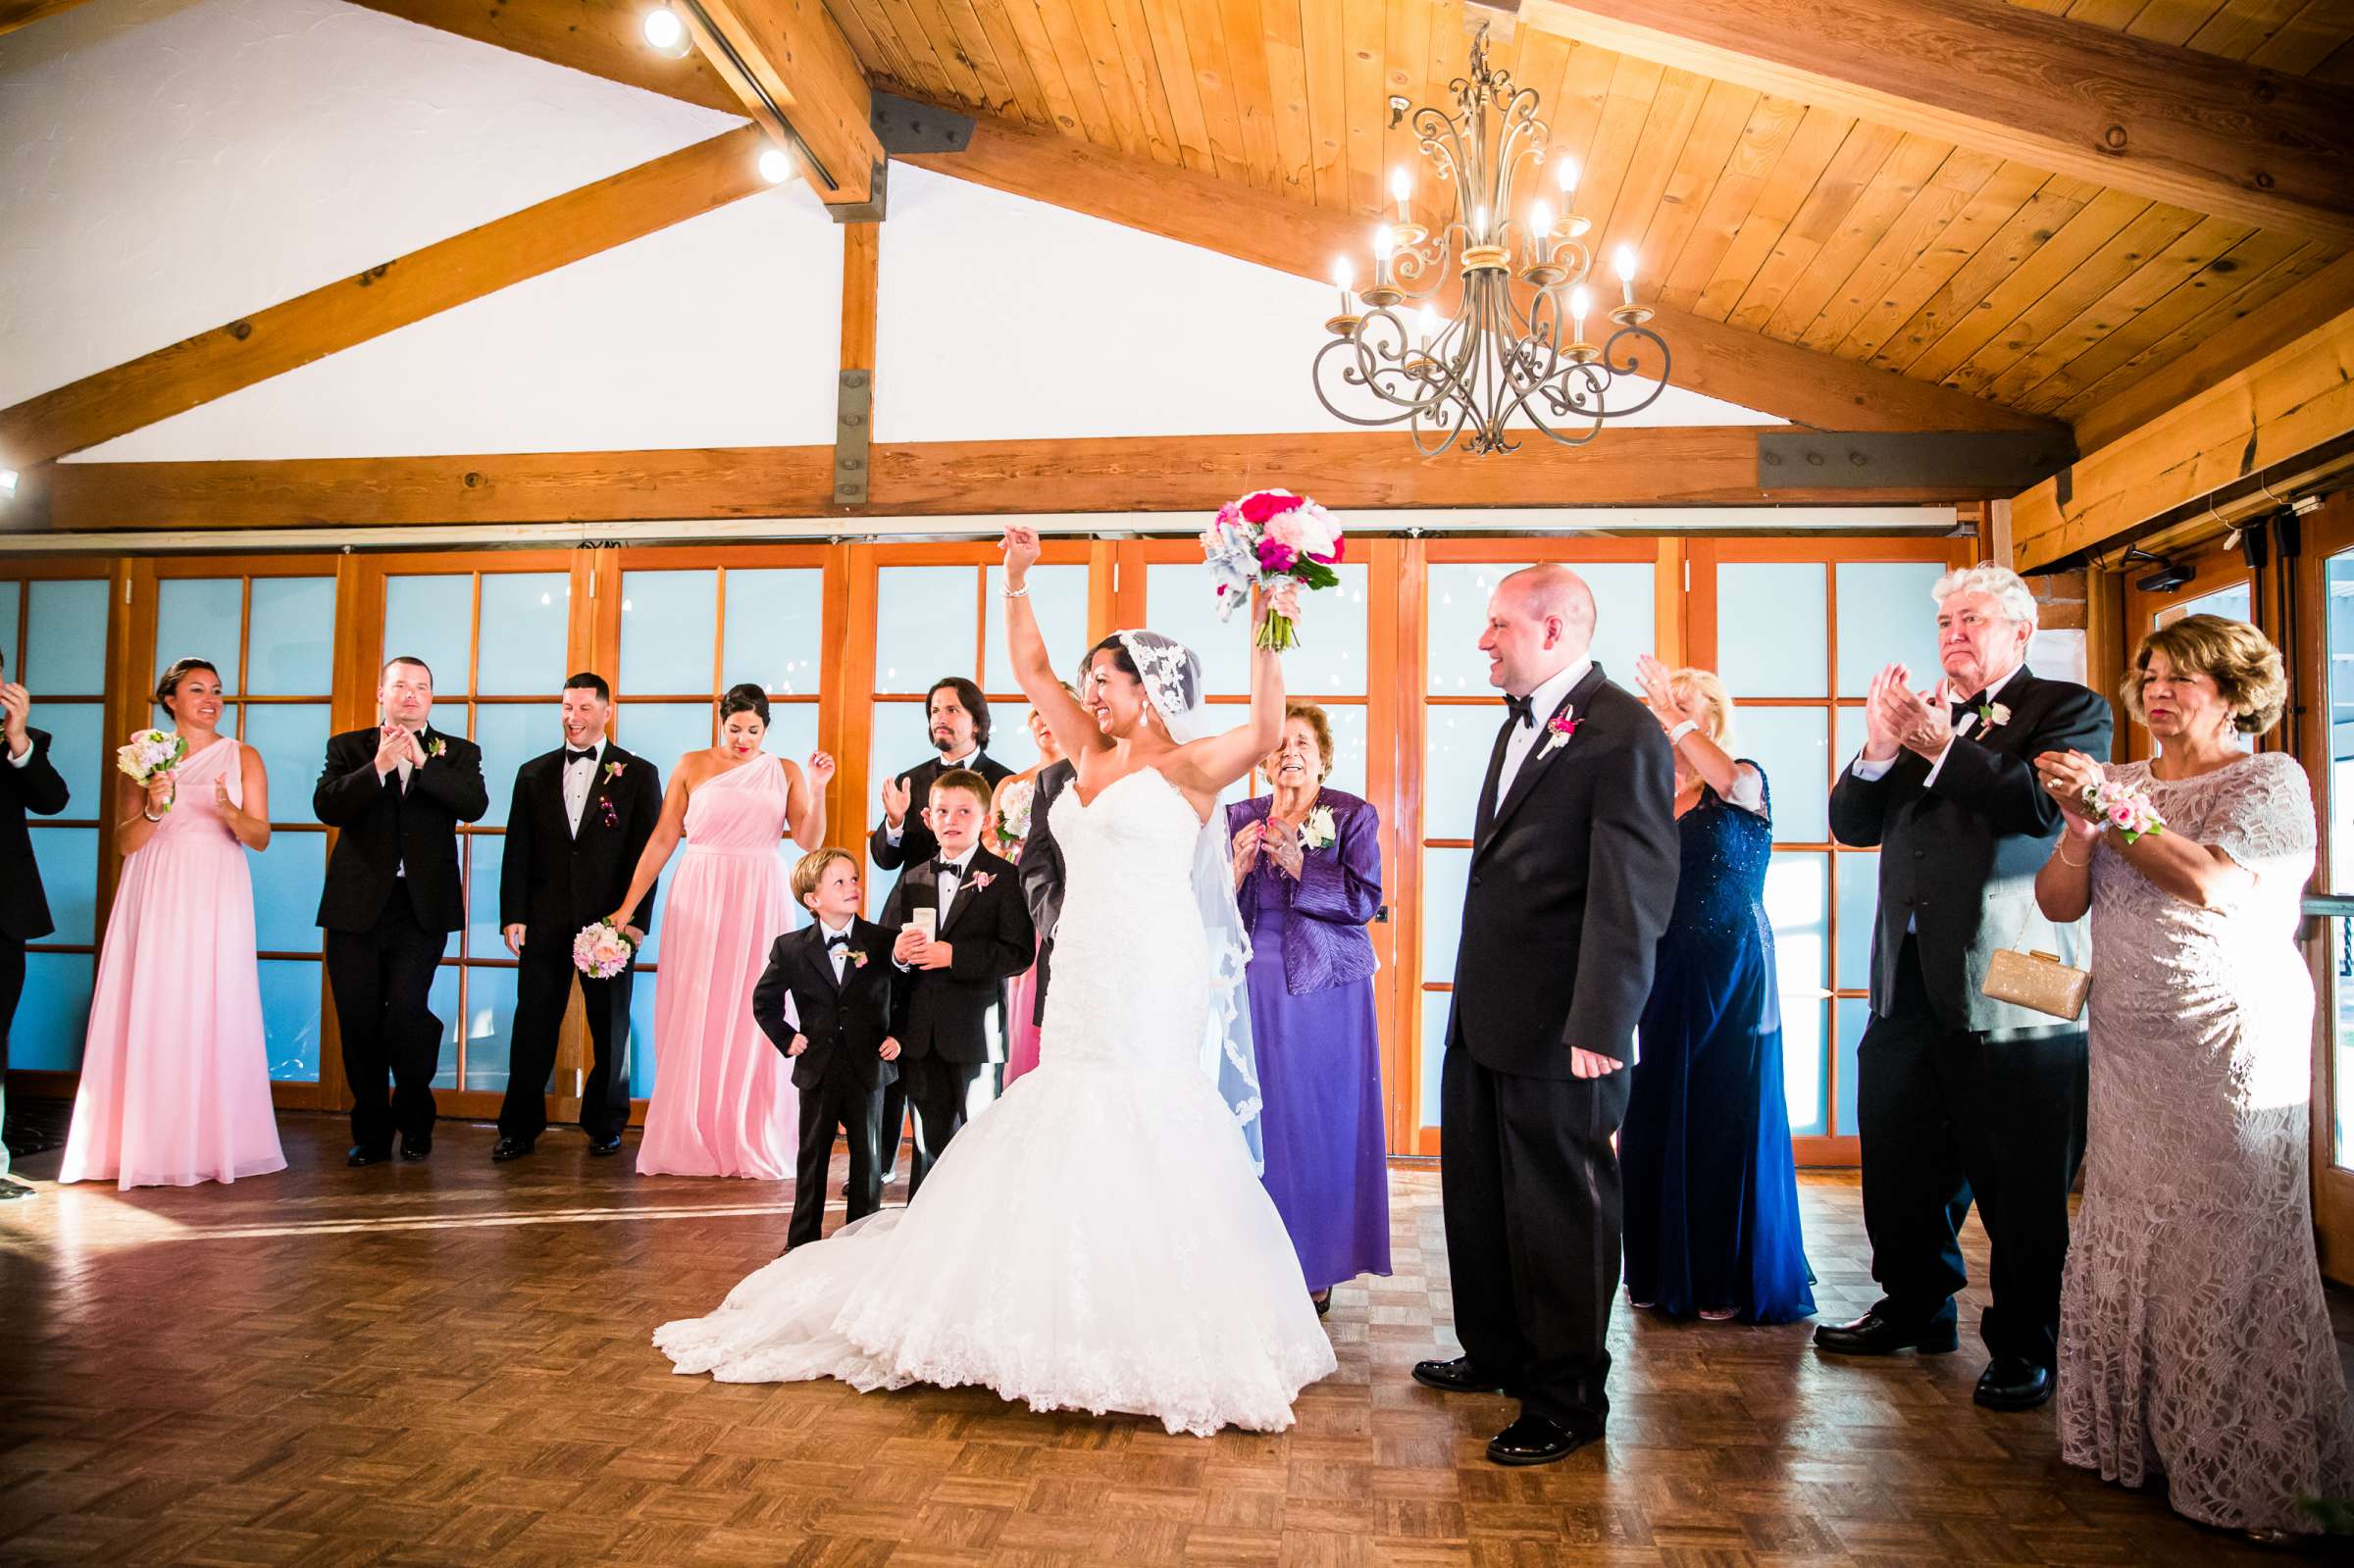 Lomas Santa Fe Country Club Wedding, Sandra and John Wedding Photo #58 by True Photography